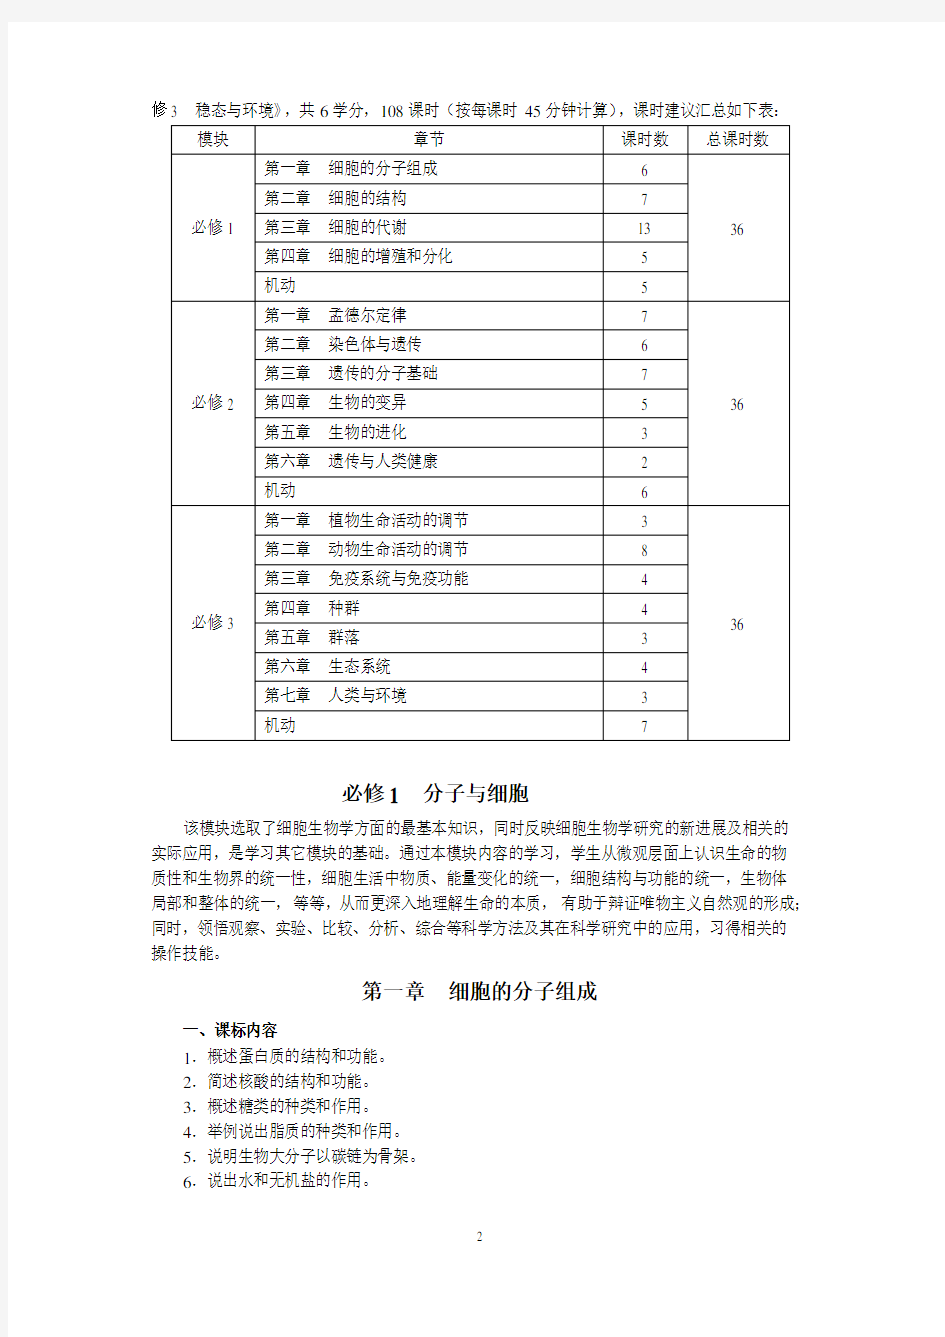 浙江省普通高中生物学科教学指导意见(2014版)